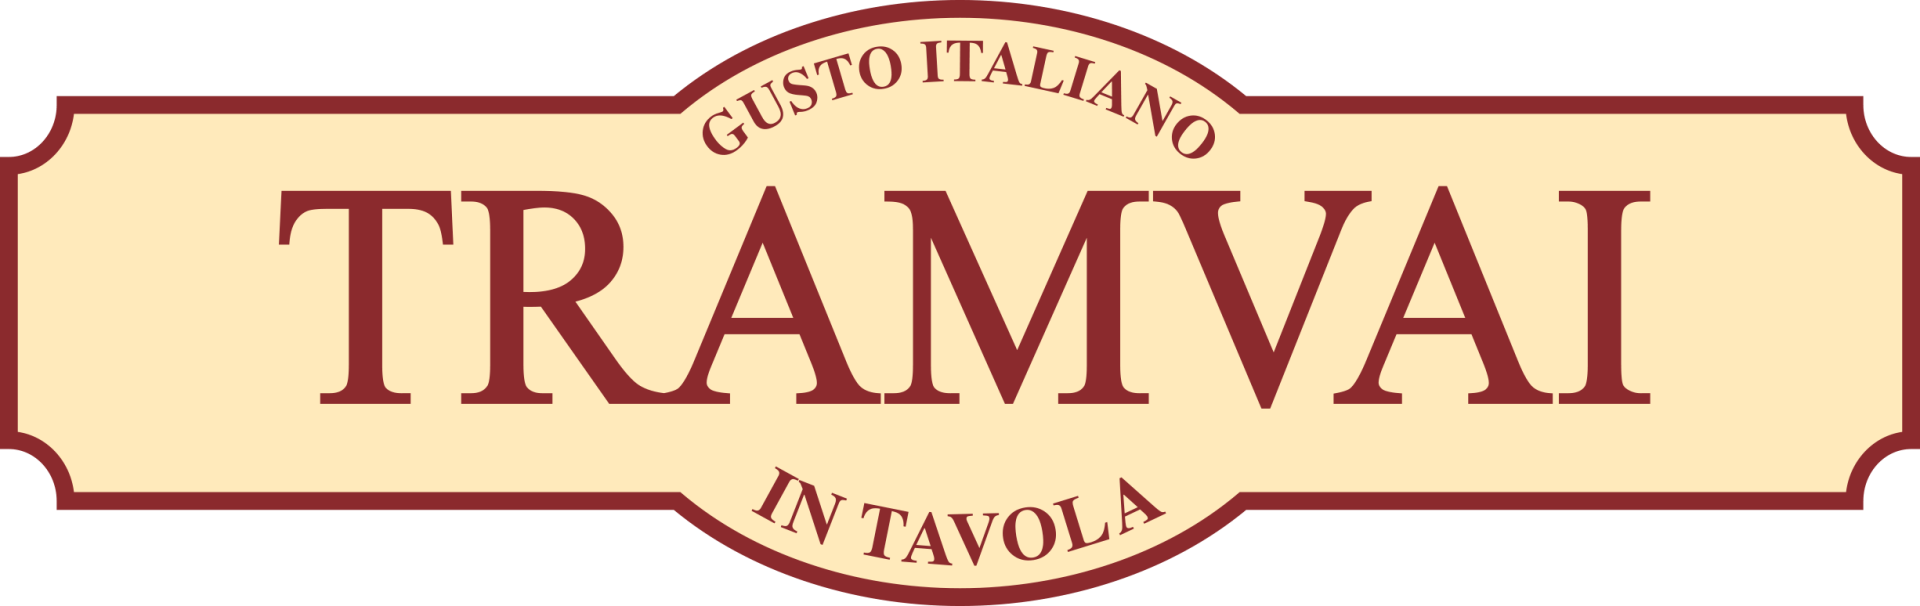 un logo per tramvai gusto italiano in tavola